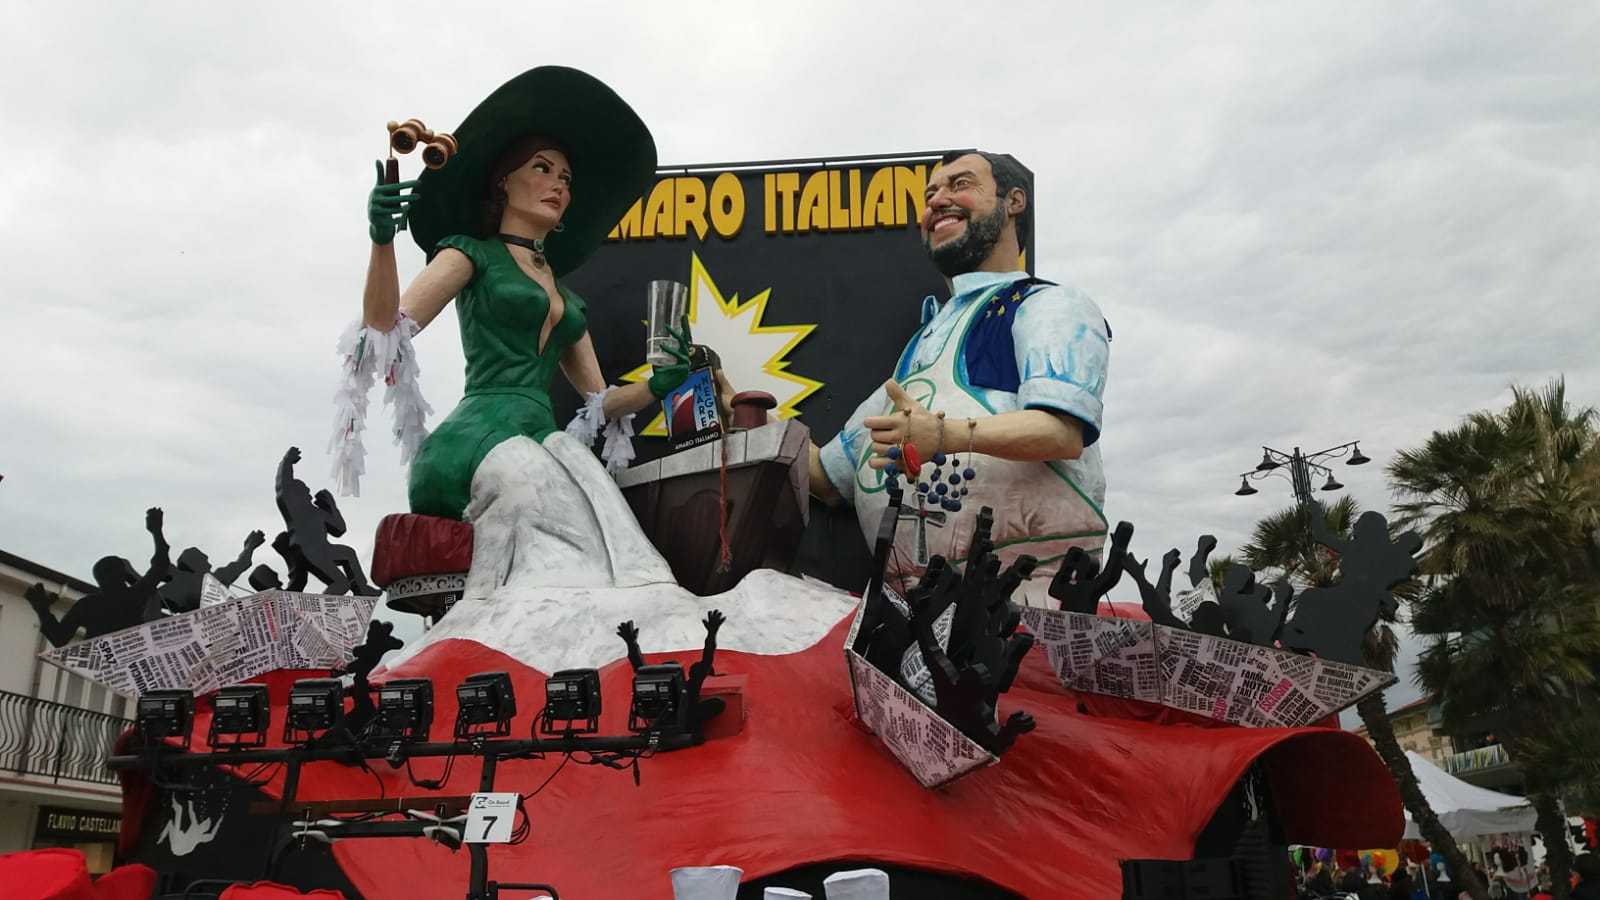 “La visita di Salvini a Viareggio non ci aggrada, lo contesteremo”